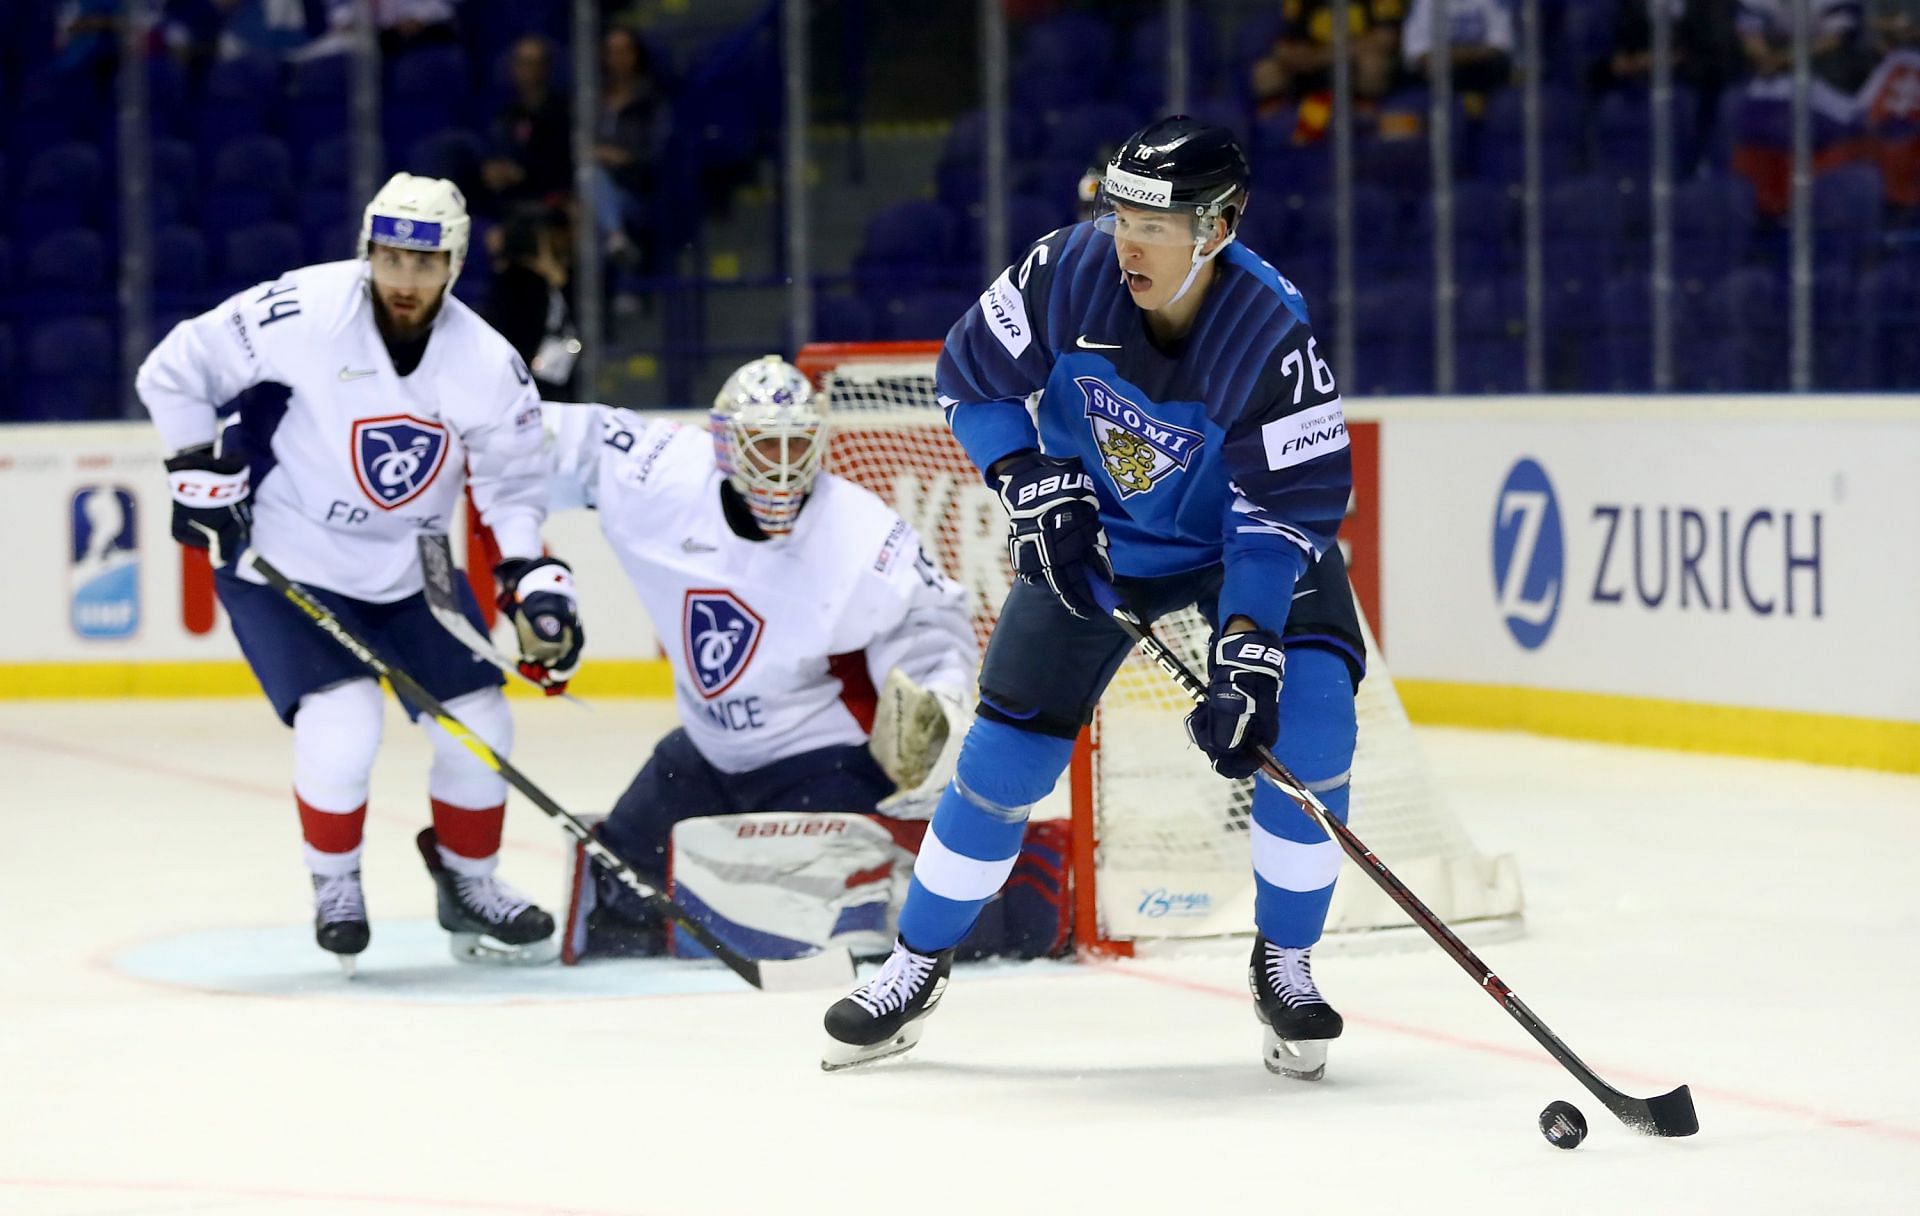 France v Finland: Group A - 2019 IIHF Ice Hockey World Championship Slovakia